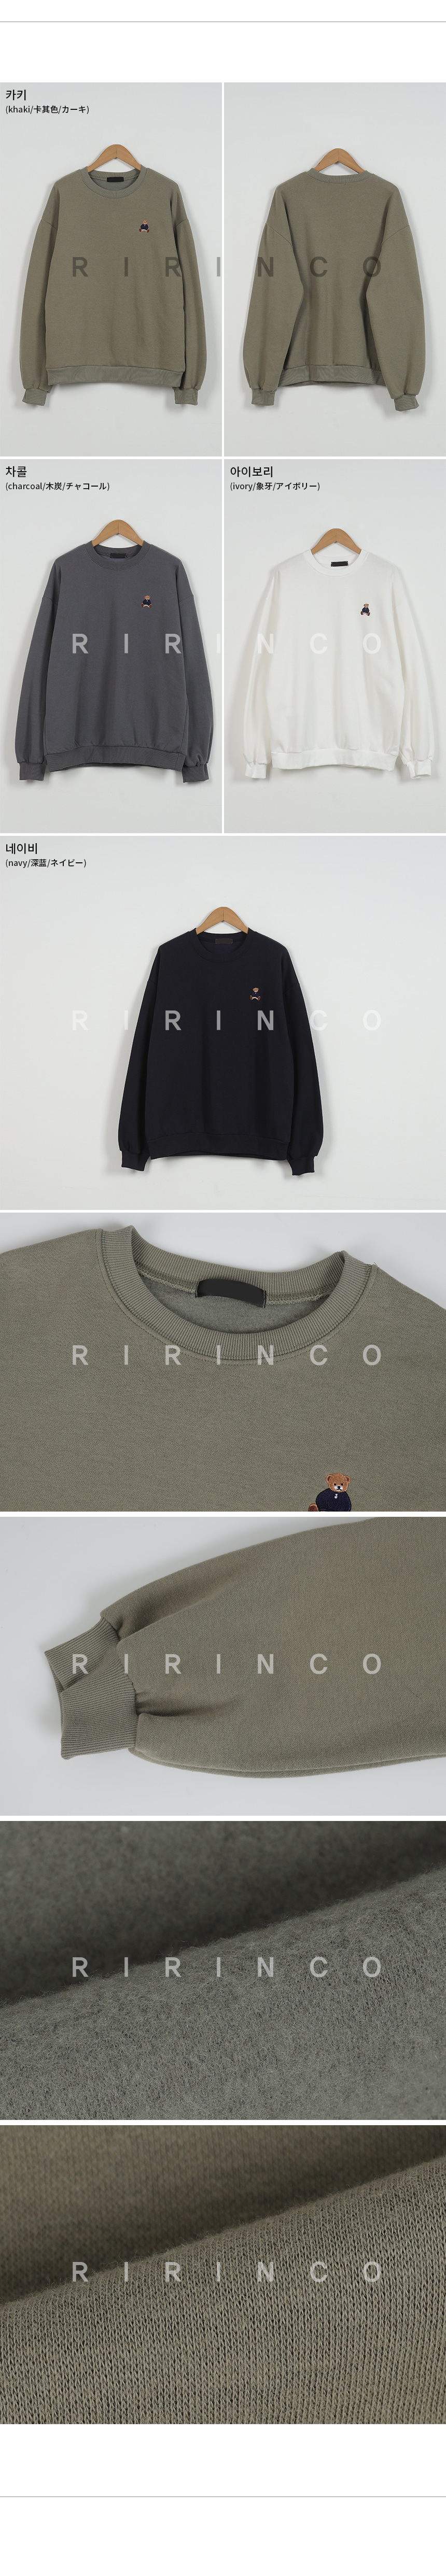 RIRINCO ルーズフィットクマ刺繍トレーナー